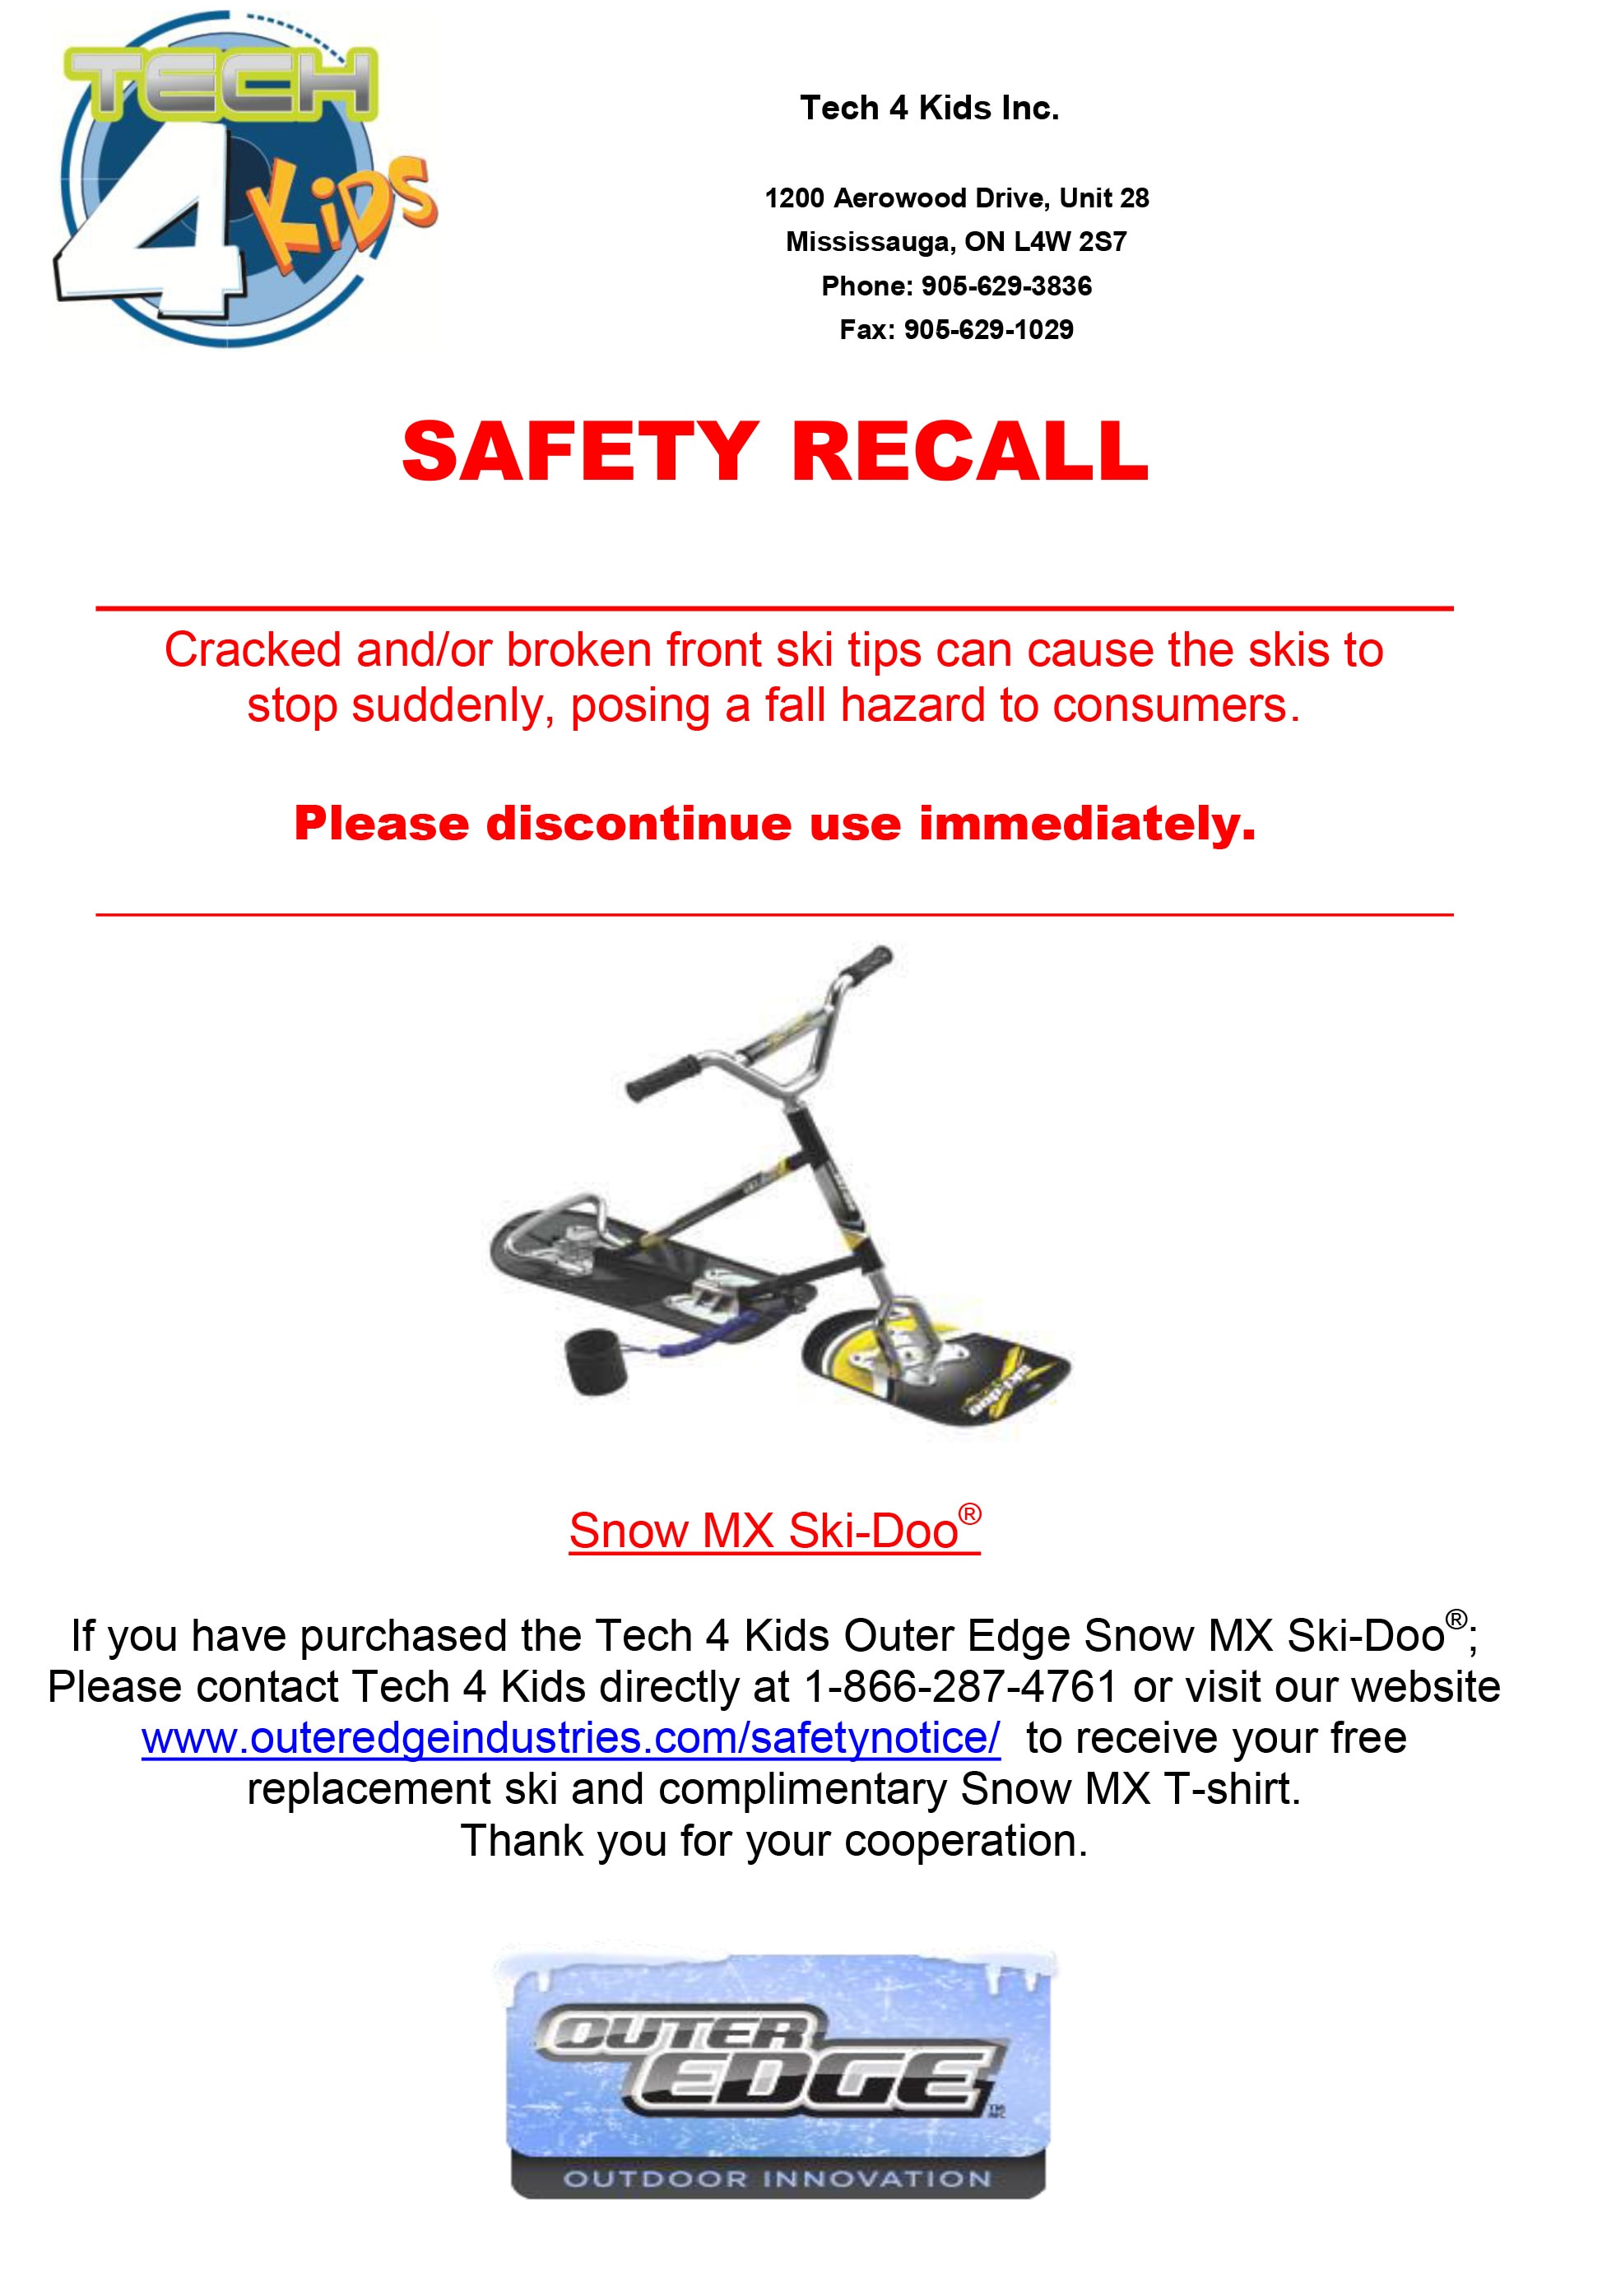 Tech 4 Kids Outer Edge Ski-Doo®  Snow MX Safety Recall